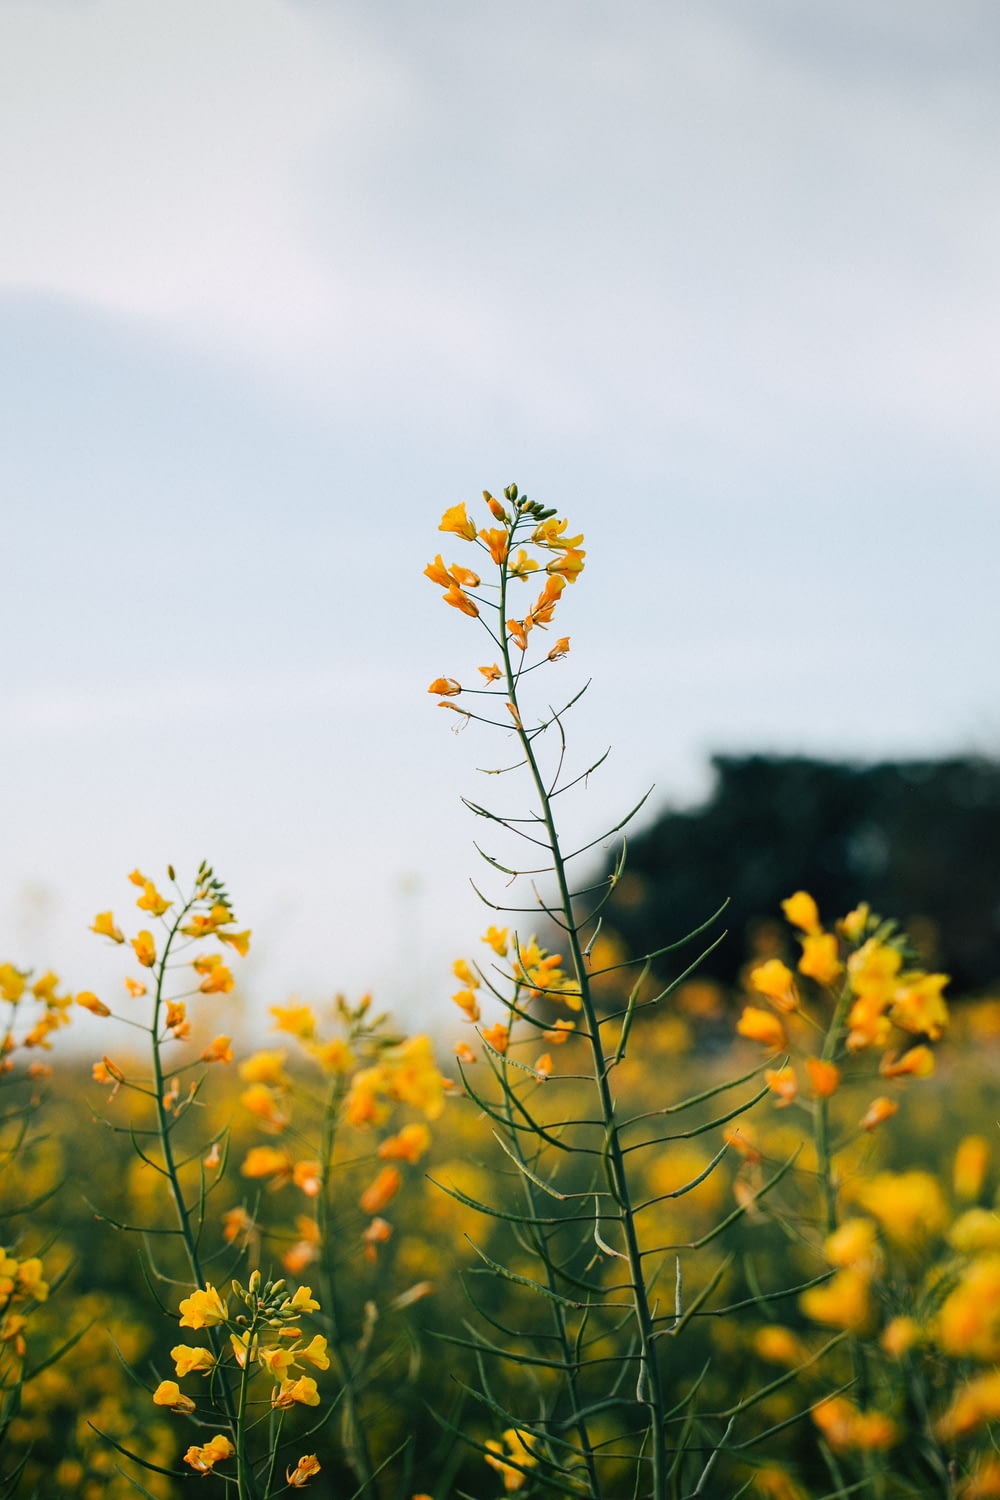 黄色い花びらの花のセレクティブフォーカス撮影